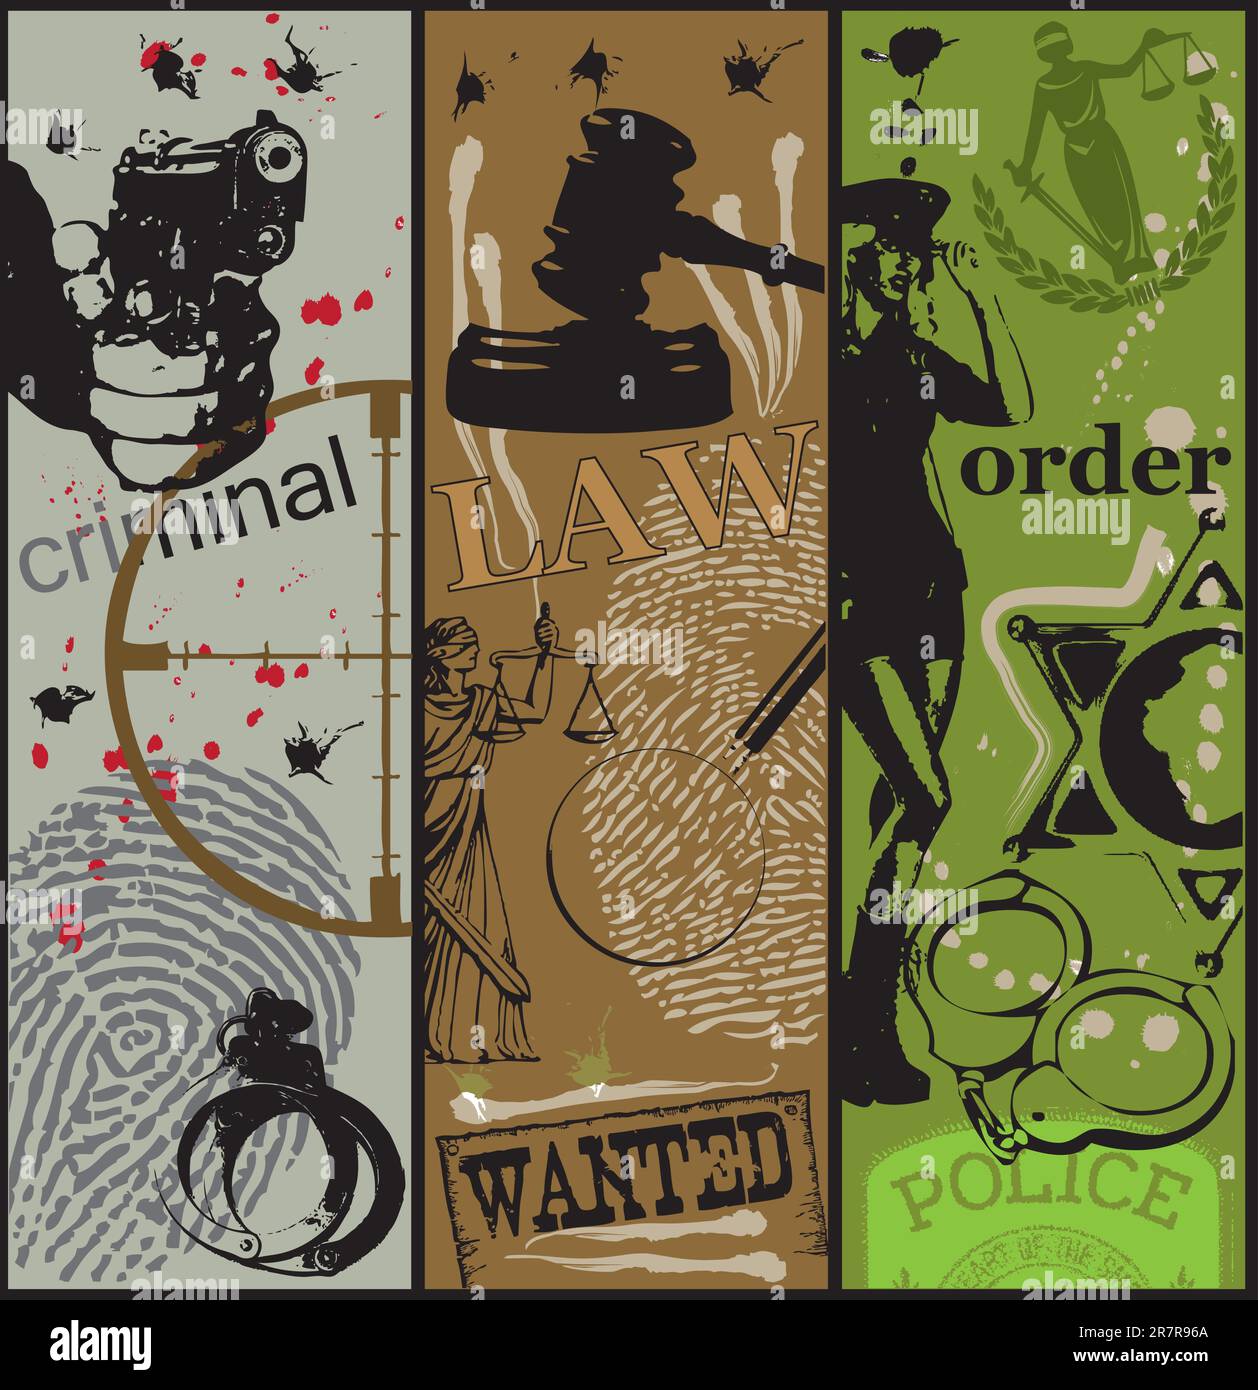 Affiche sur le thème de la criminalité, de la loi et de l'ordre en utilisant les symboles appropriés. Illustration de Vecteur